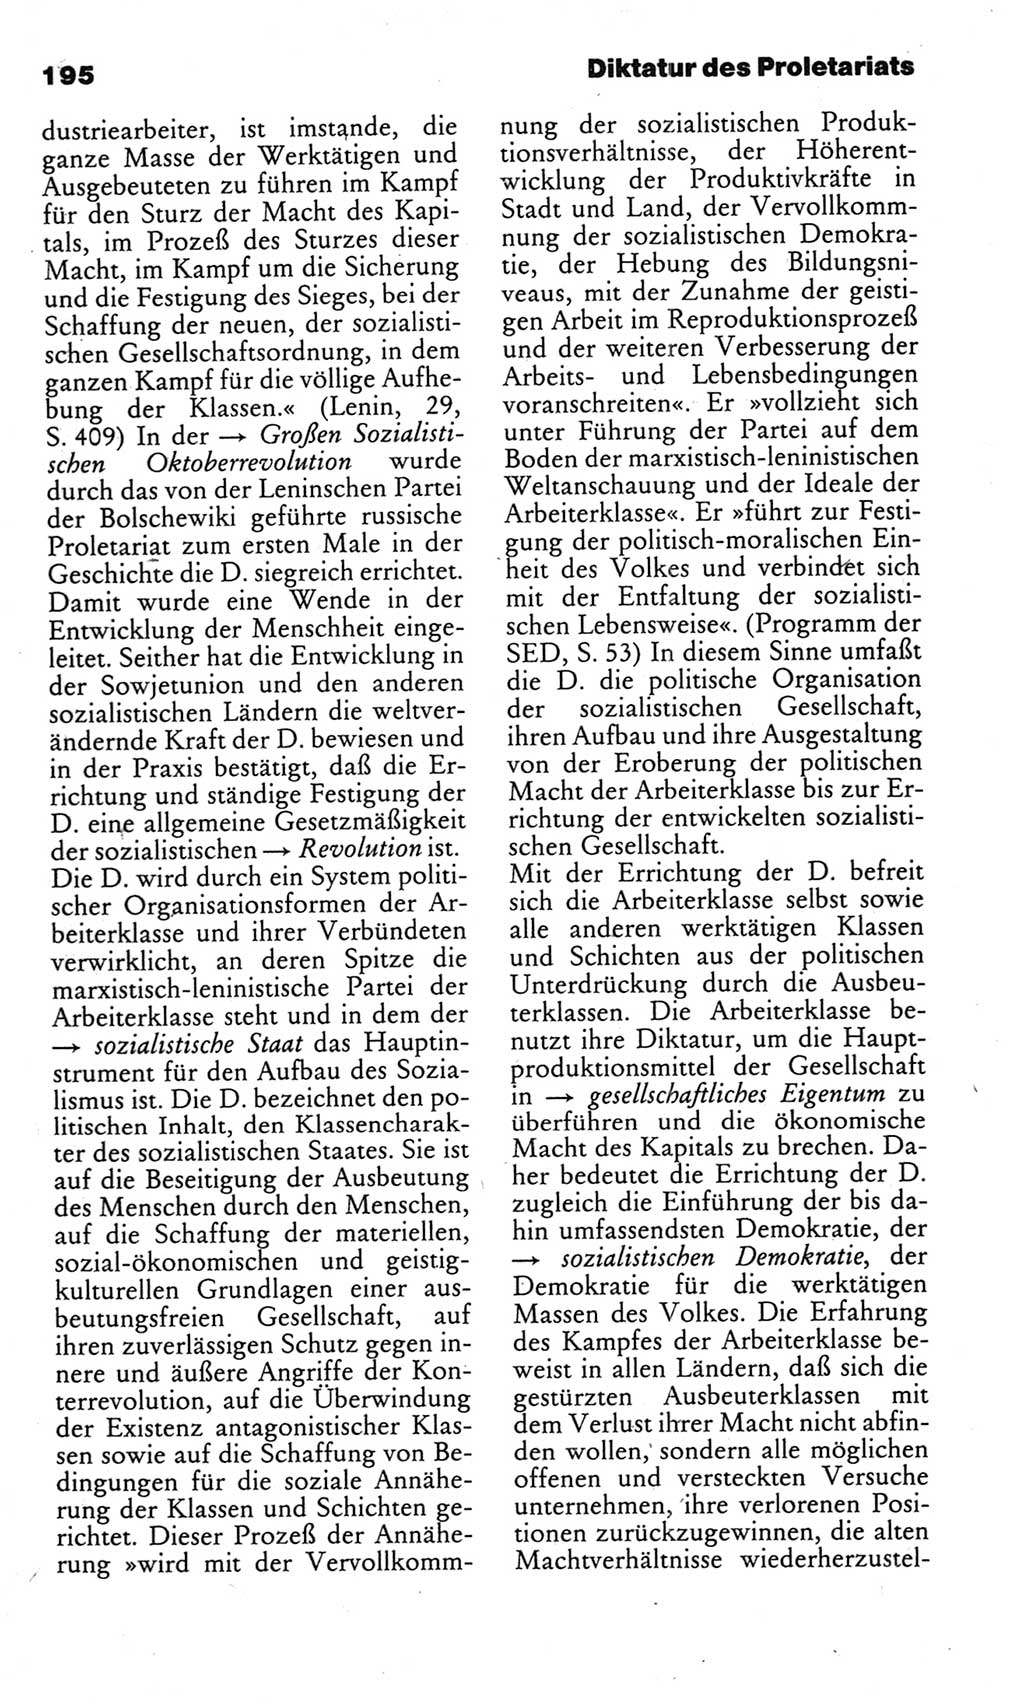 Kleines politisches Wörterbuch [Deutsche Demokratische Republik (DDR)] 1983, Seite 195 (Kl. pol. Wb. DDR 1983, S. 195)